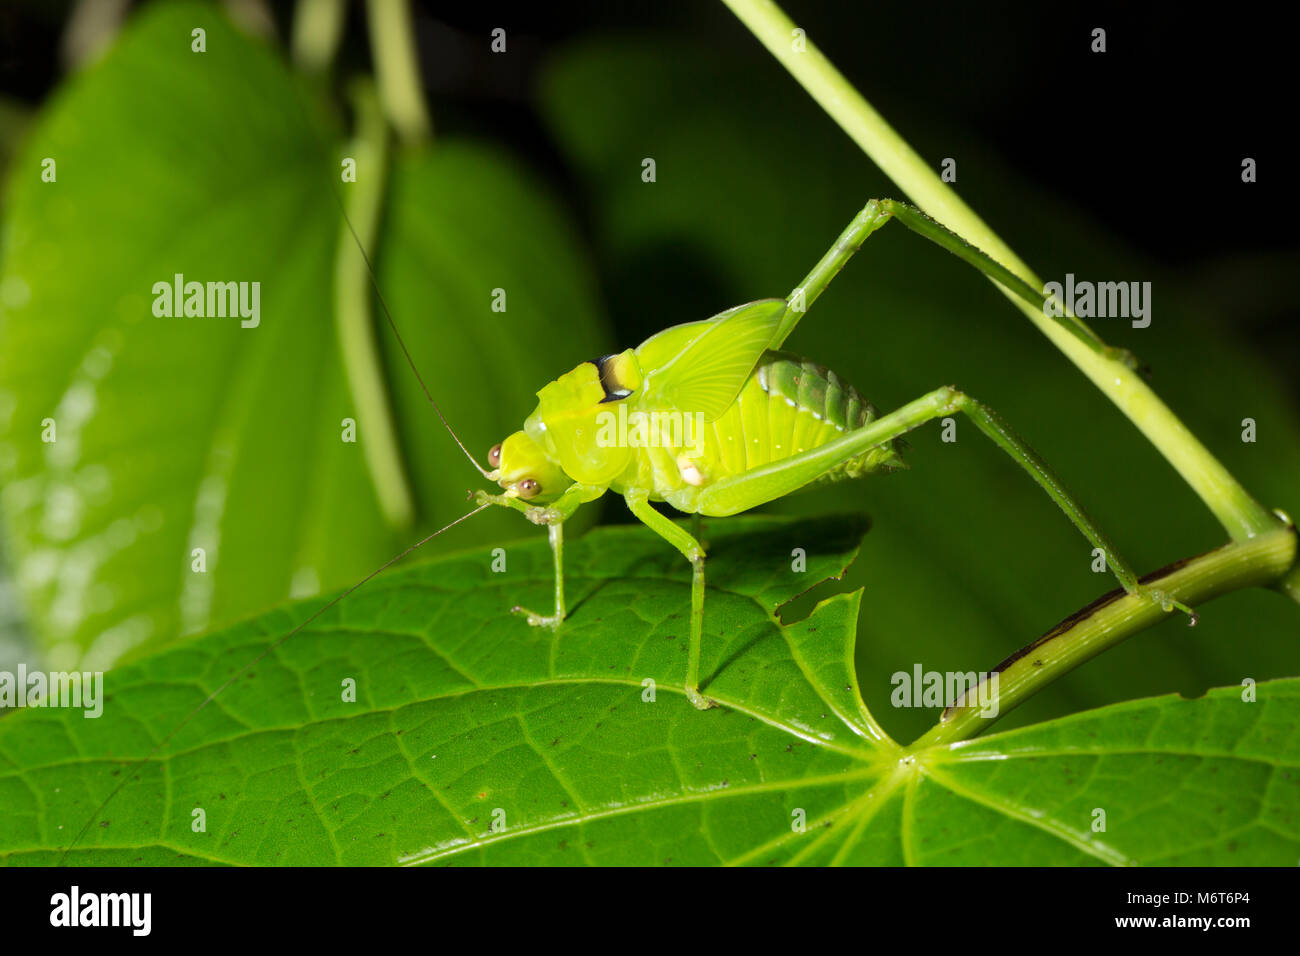 Bush Cricket oder katydid, im Dschungel bei Nacht fotografiert. Bakhuis, Suriname, Südamerika Stockfoto